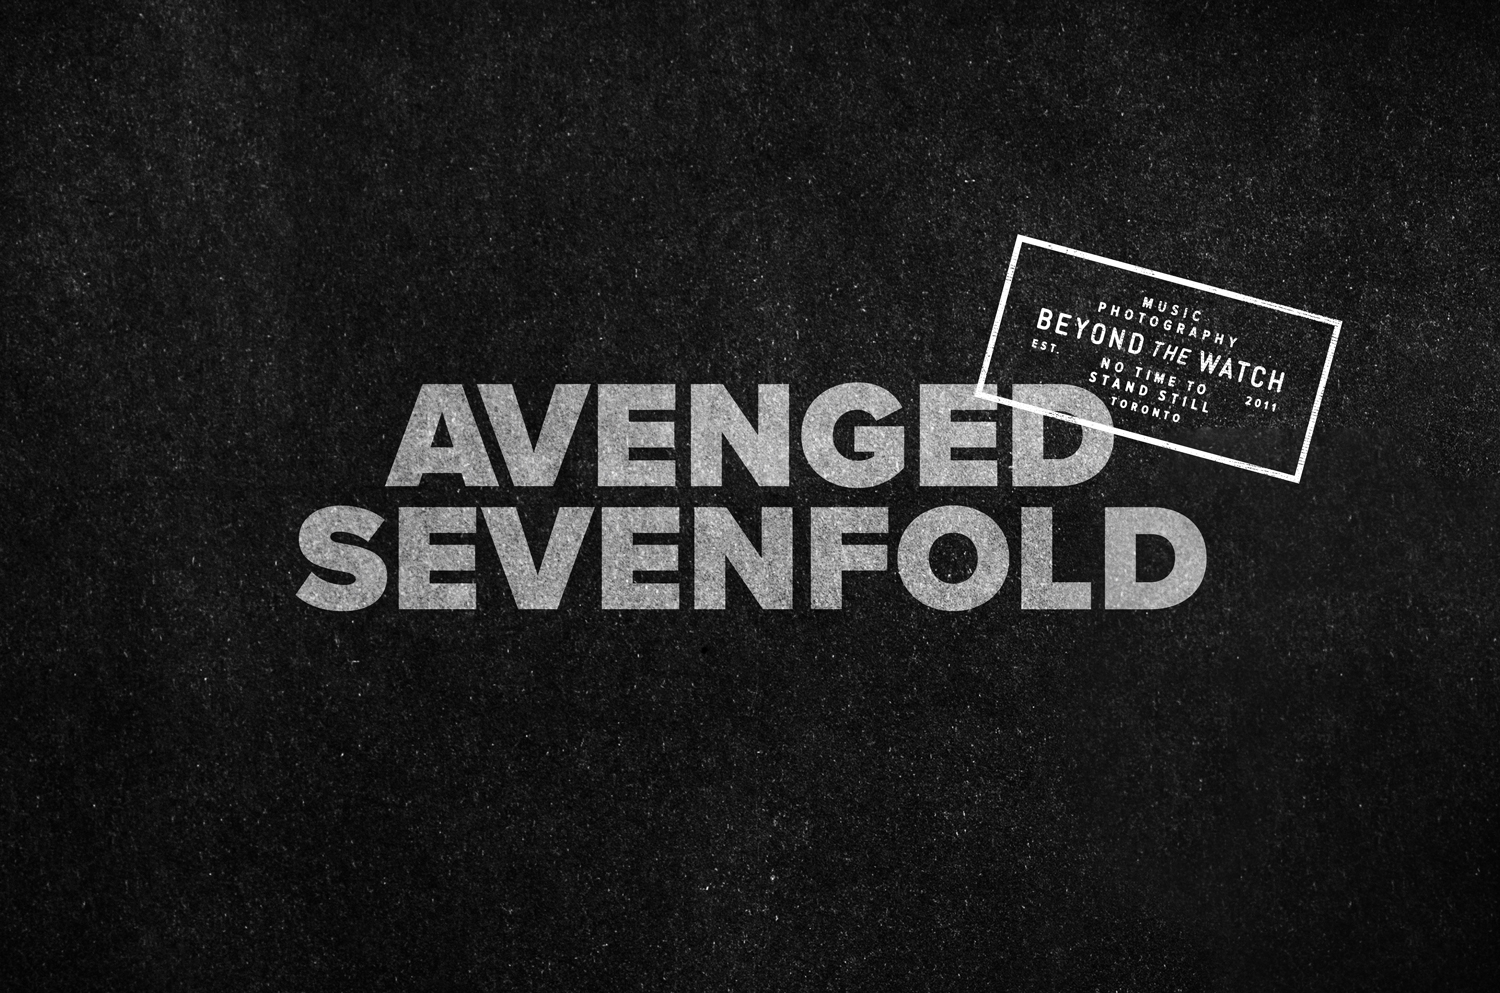 AvengedSevenfold_LR.jpg